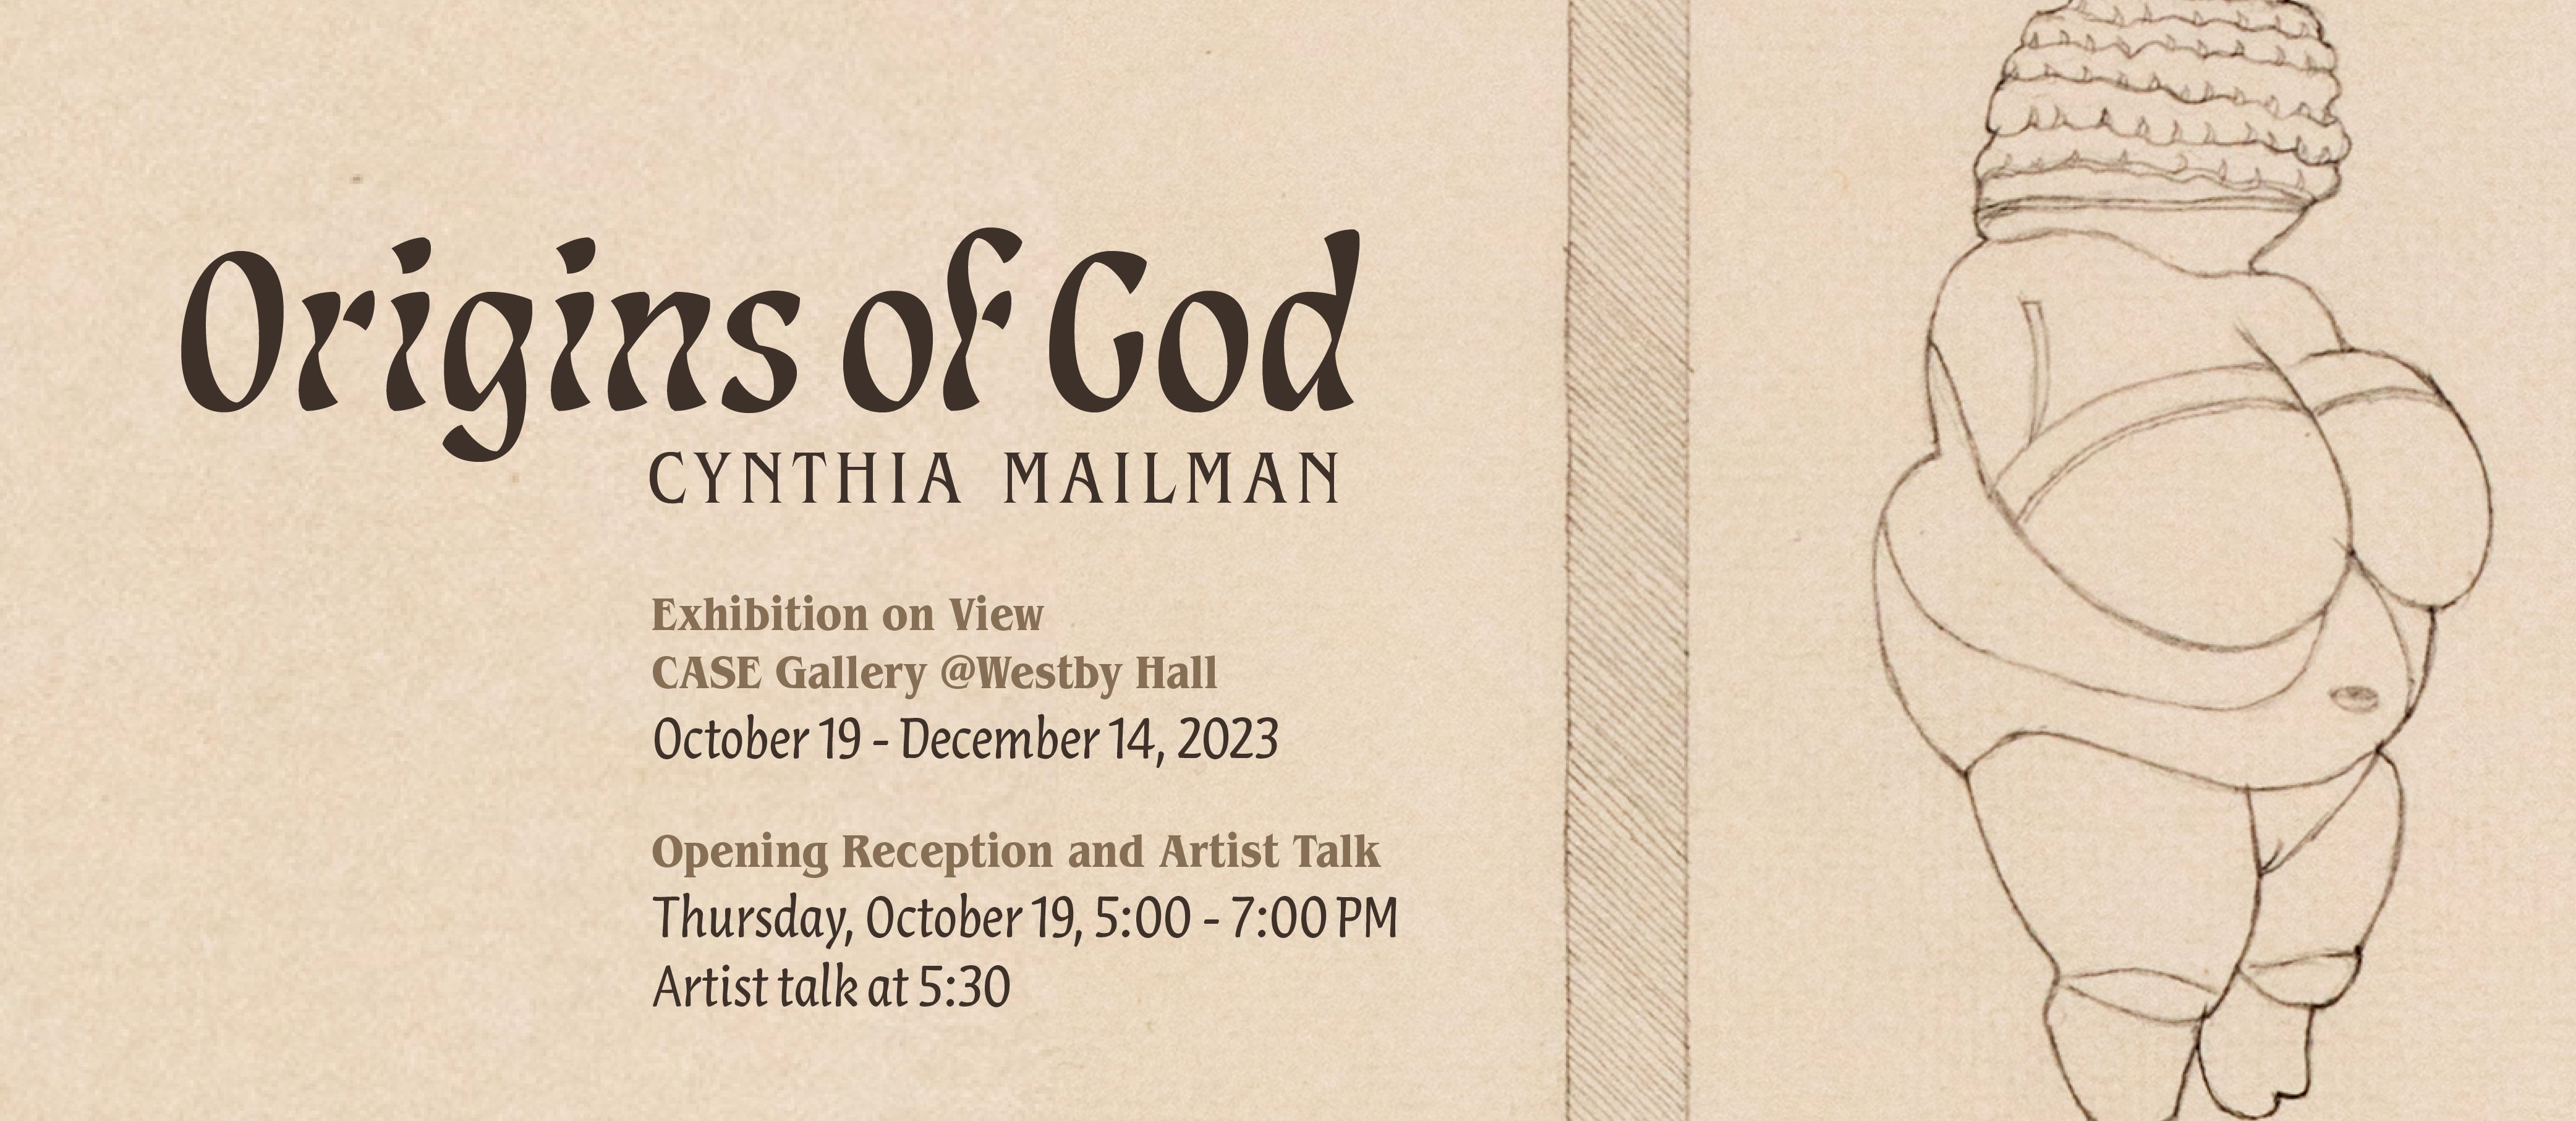 Cynthia Mailman Origins of God